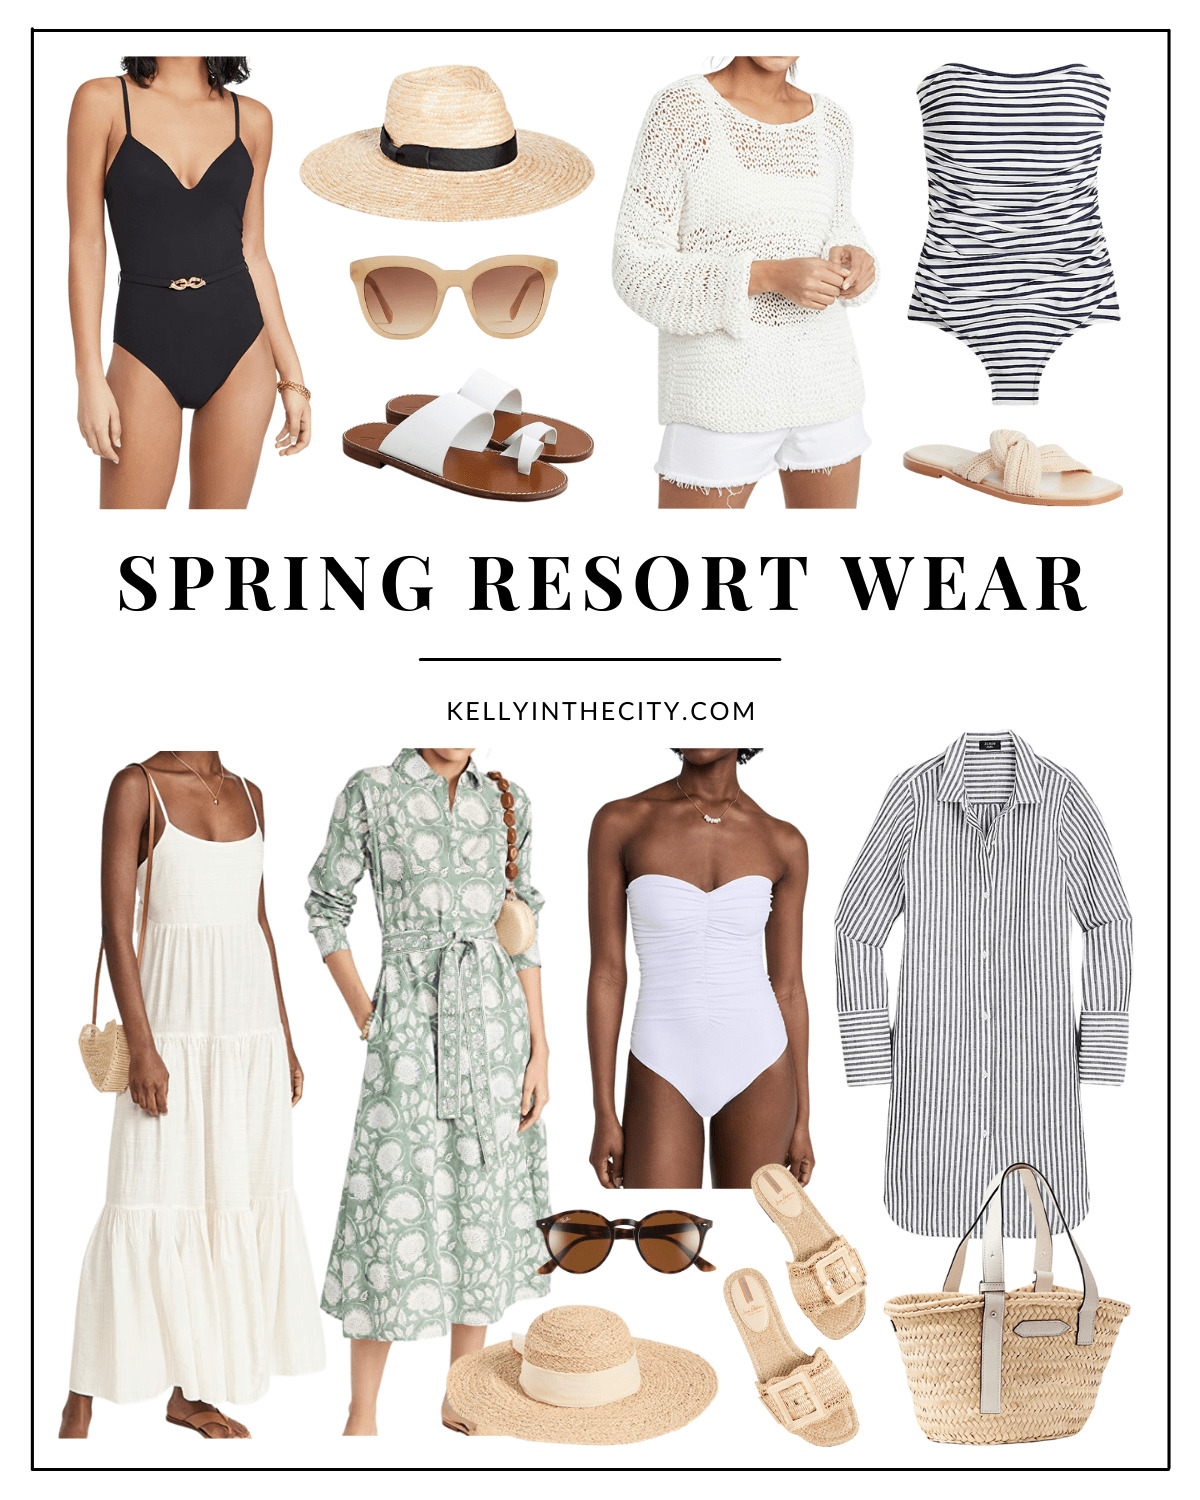 Spring Resort Wear